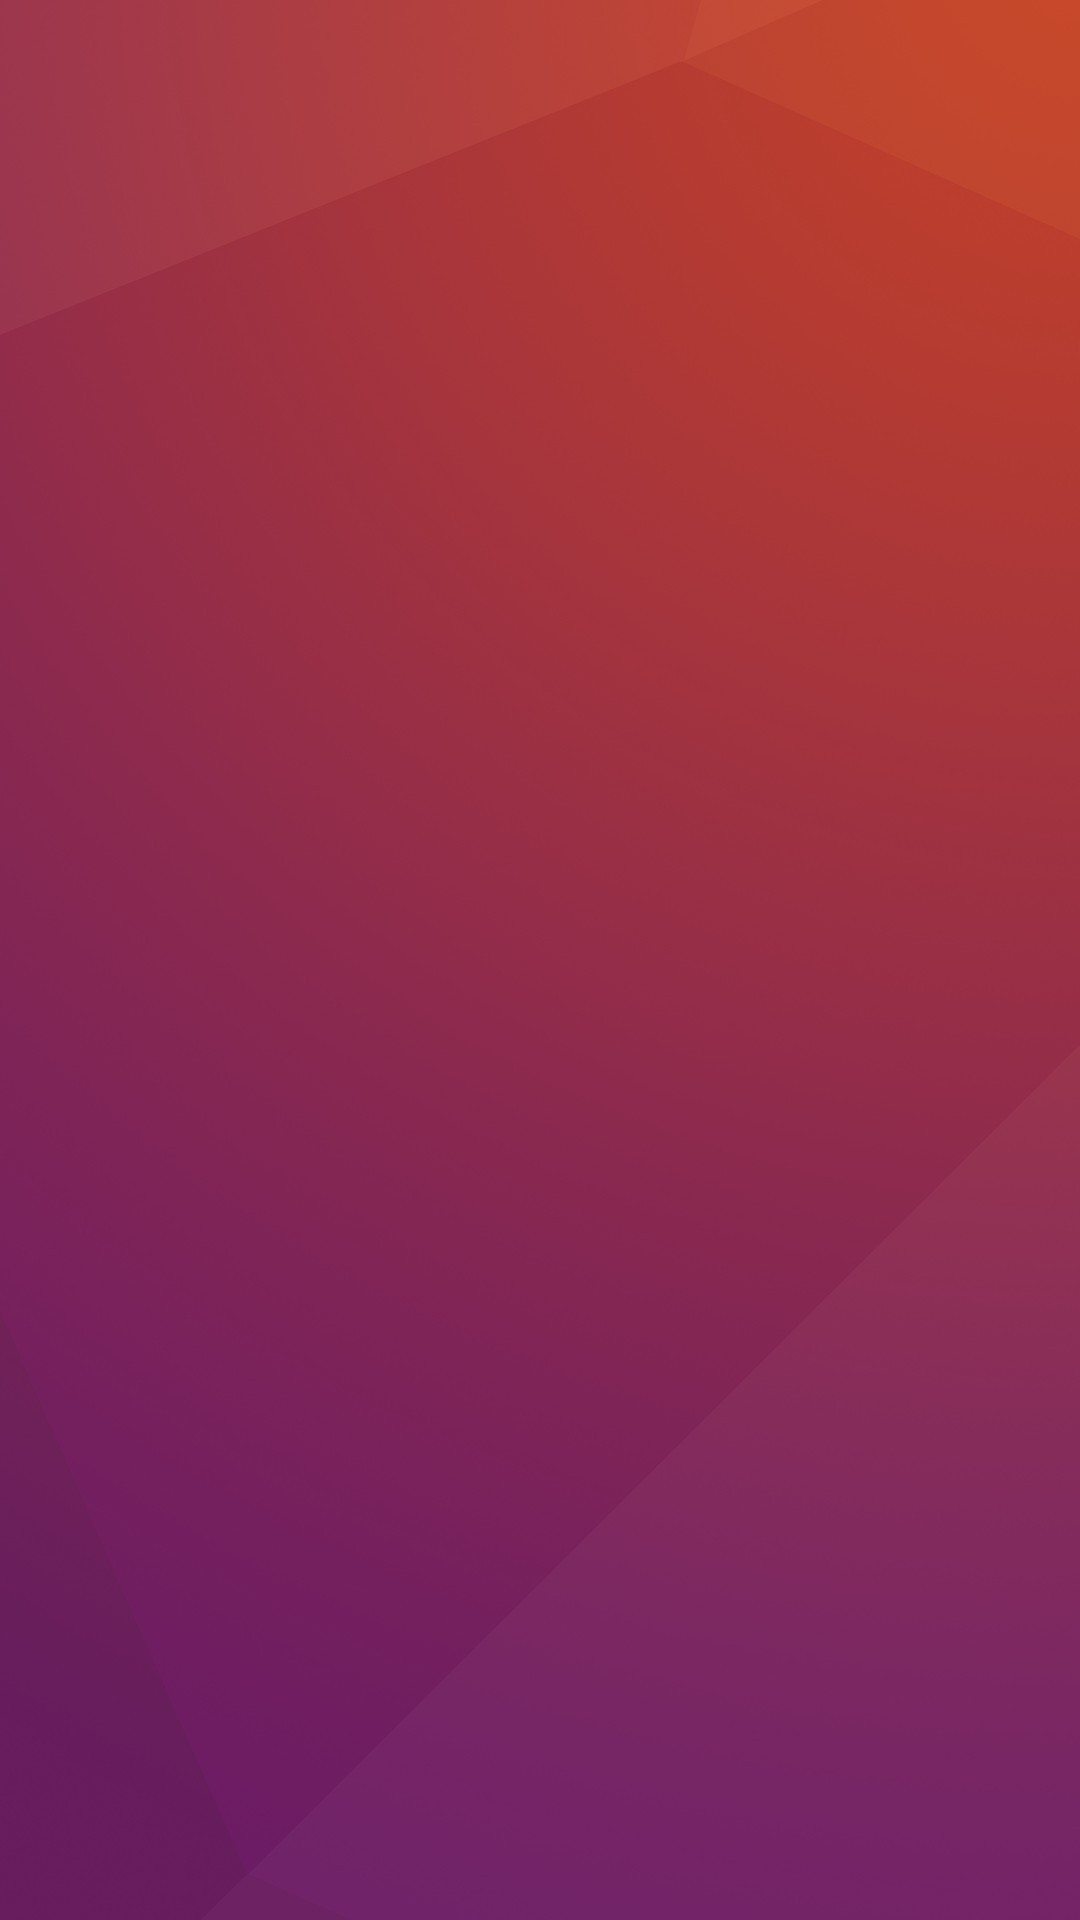 ubuntu fondo de pantalla,rojo,rosado,violeta,púrpura,lila